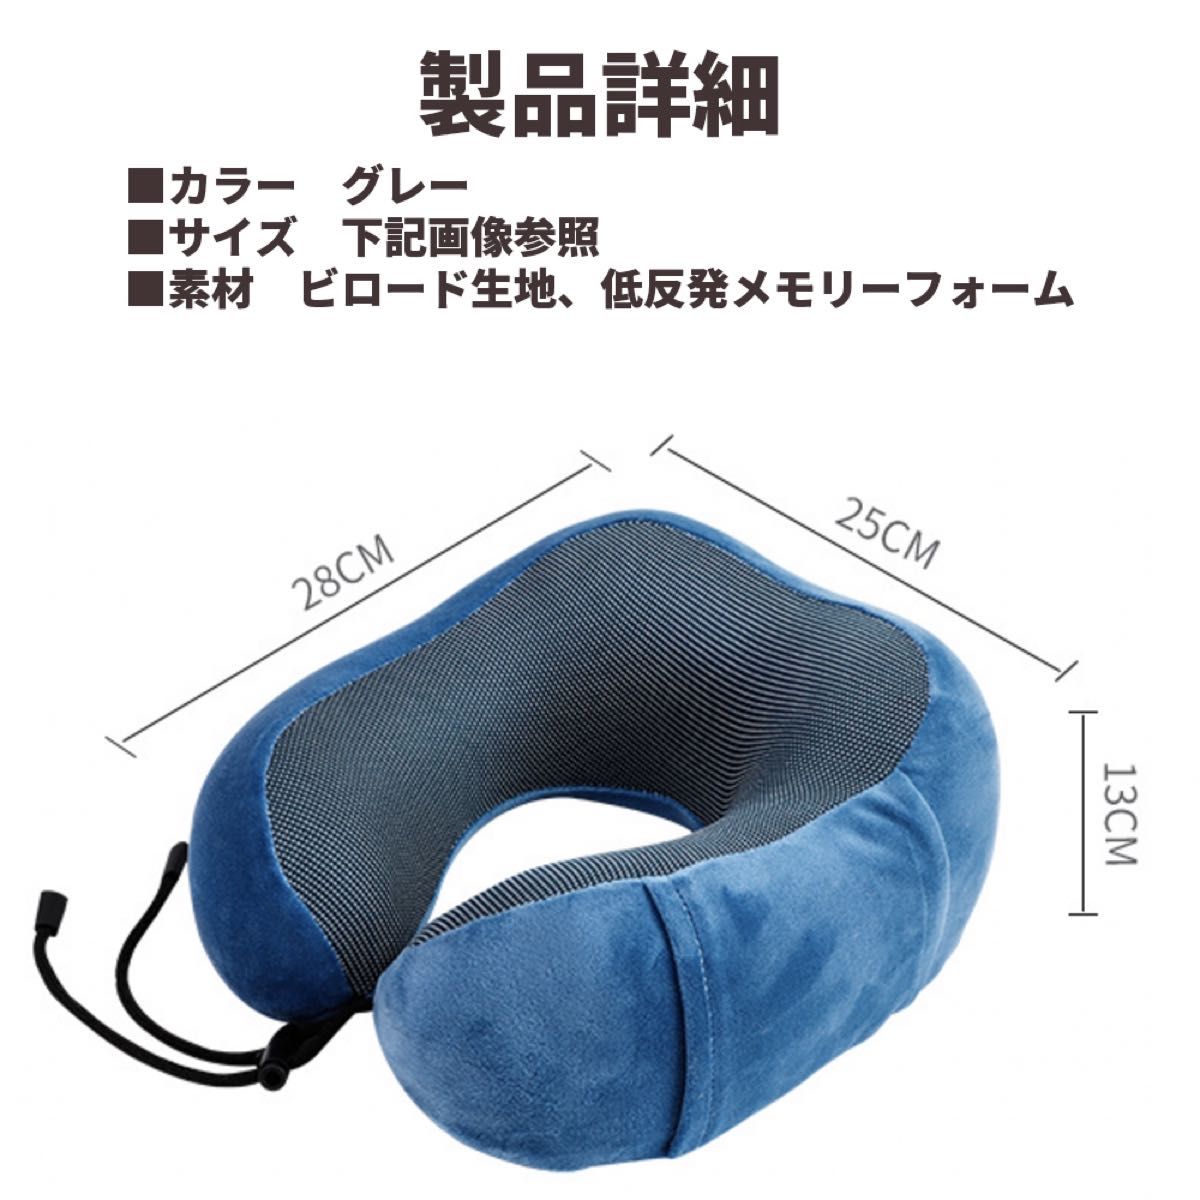 収納袋付き!低反発 ネックピロー SGS認証 頚椎サポート枕 旅行